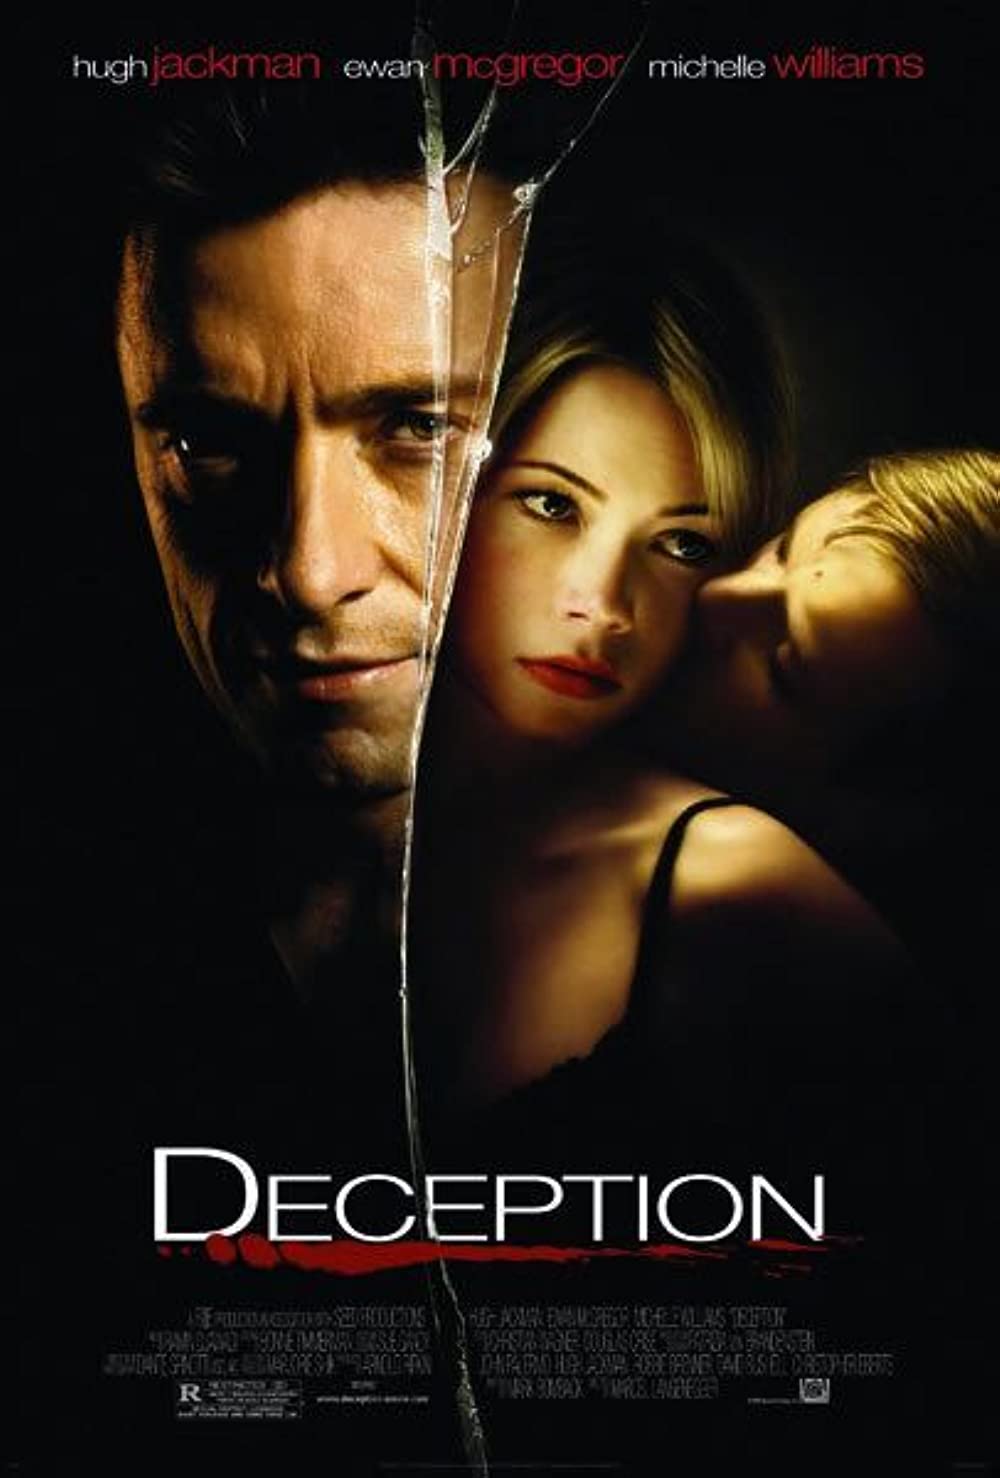 Filmbeschreibung zu Deception (OV)